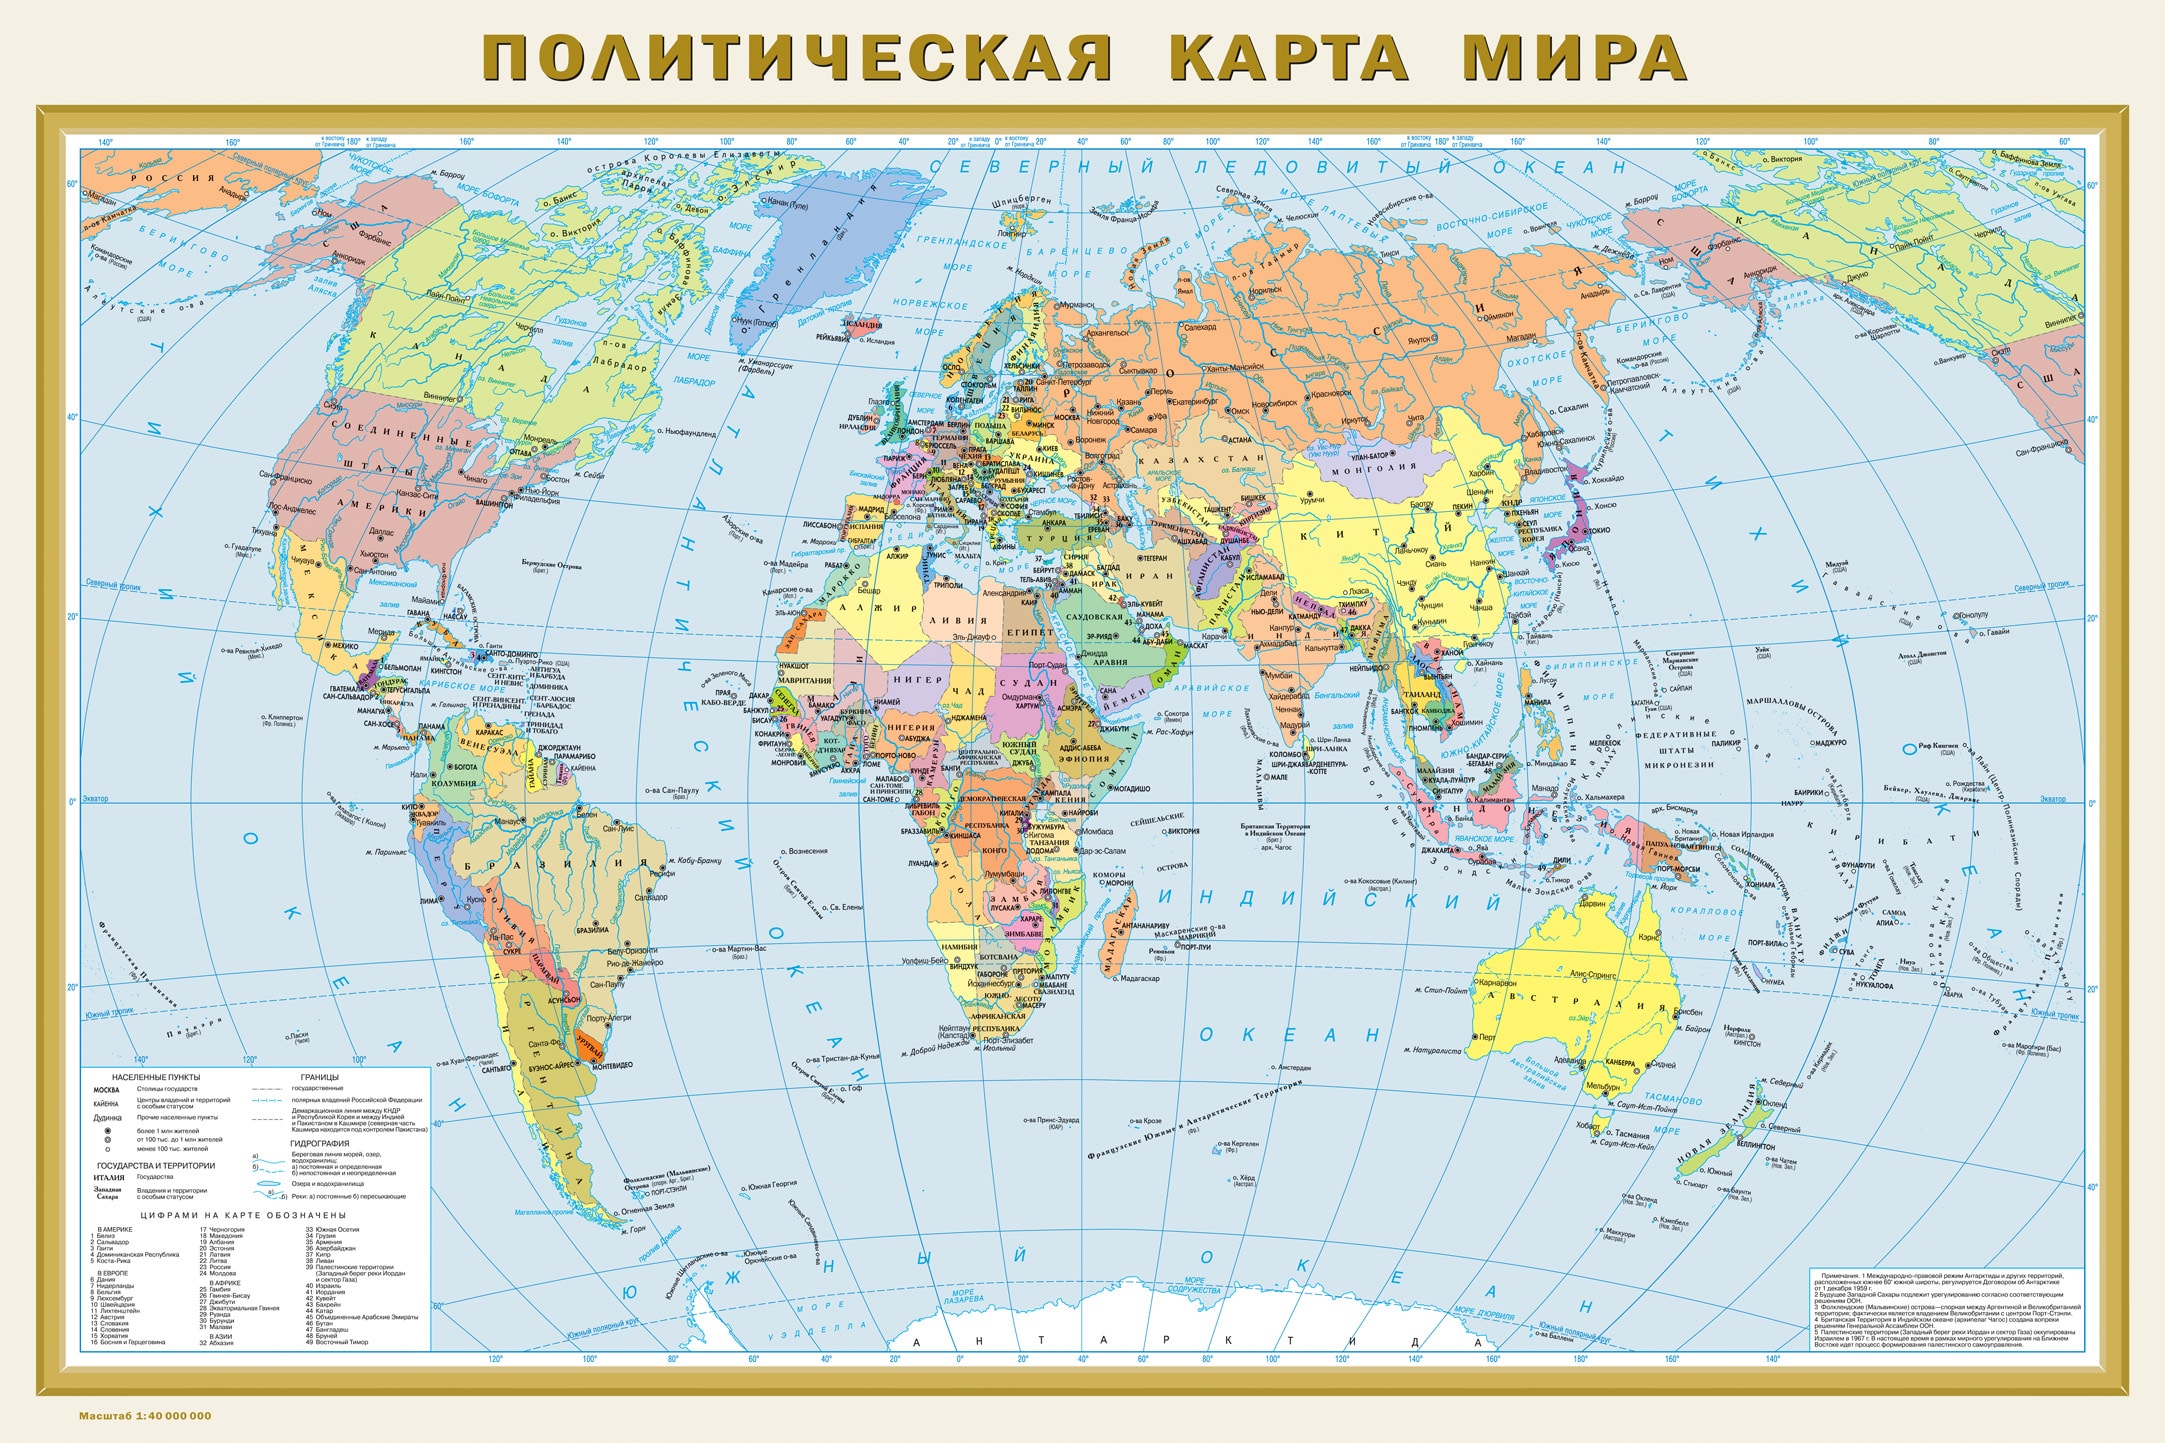 Карта мира политическая хорошее качество на русском с увеличением